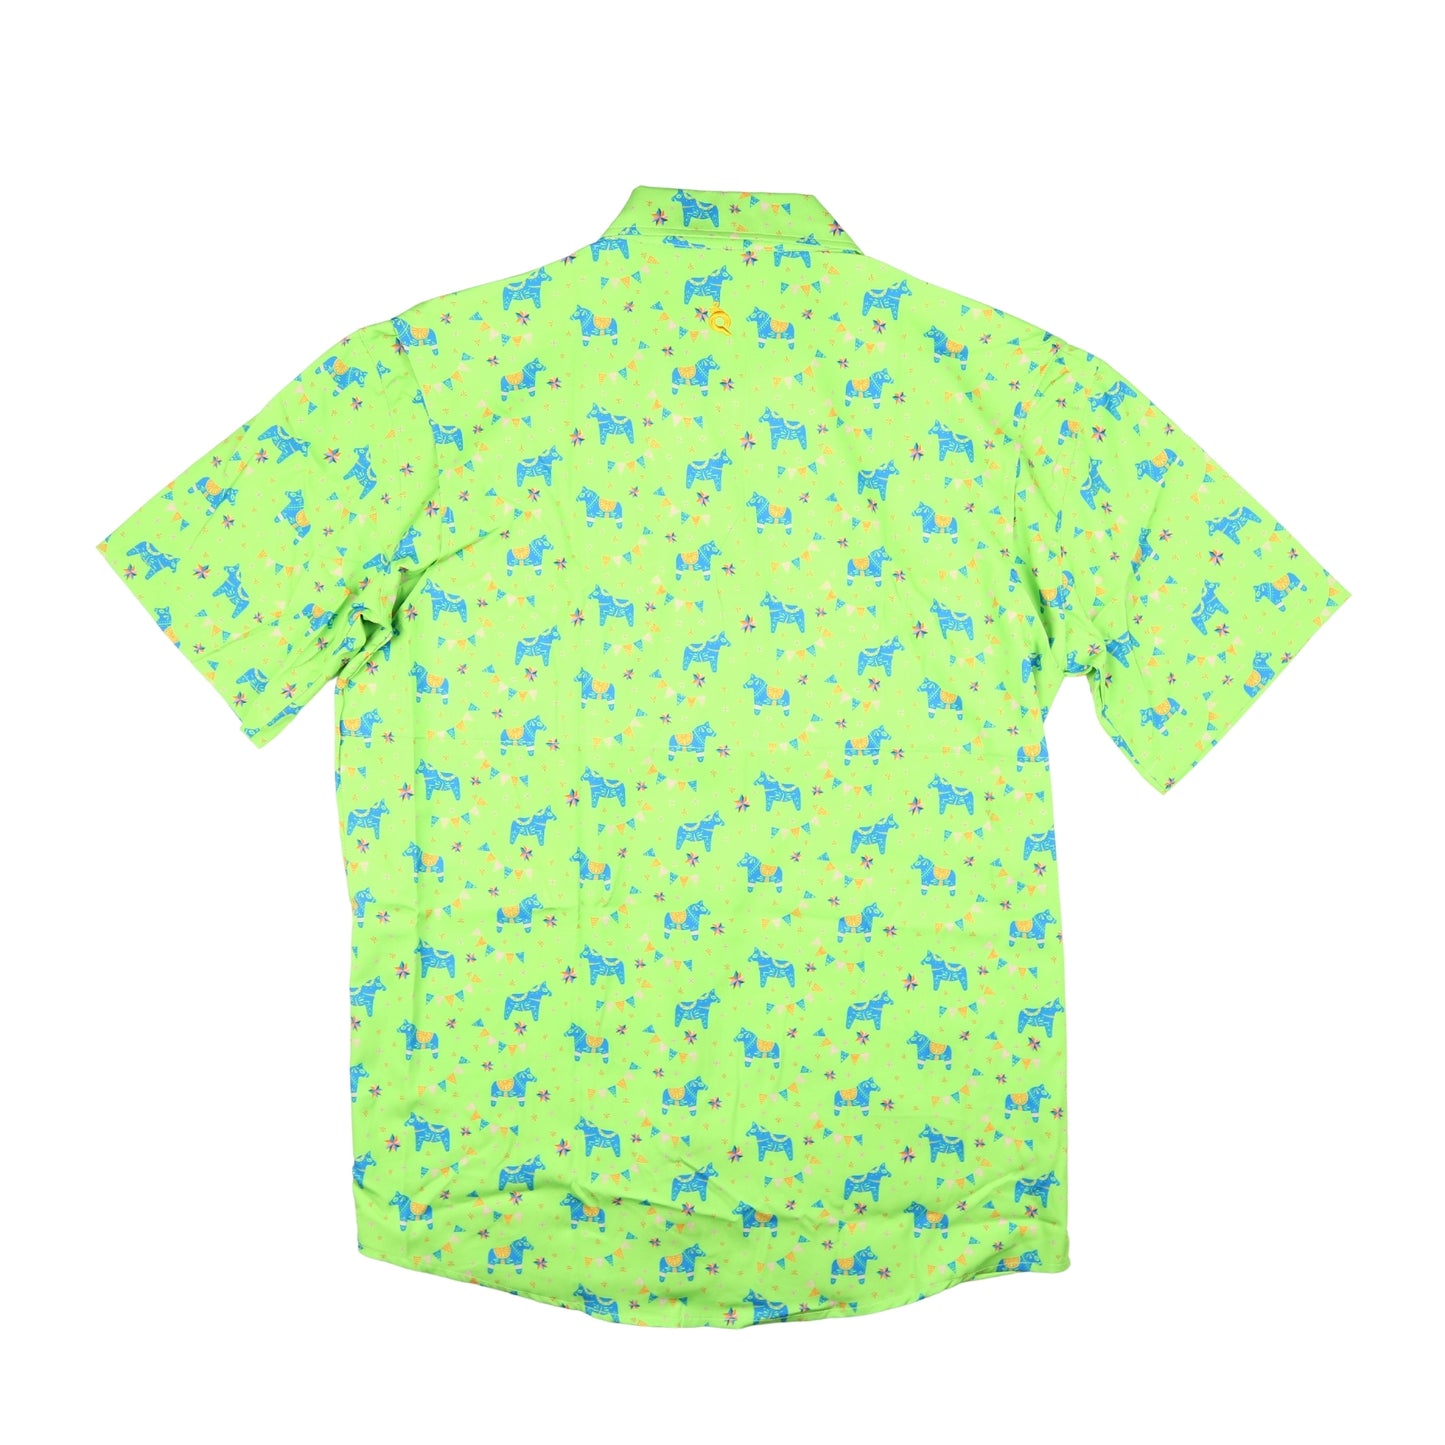 Men’s - Guayabera - Fiesta Short Sleeve Shirt